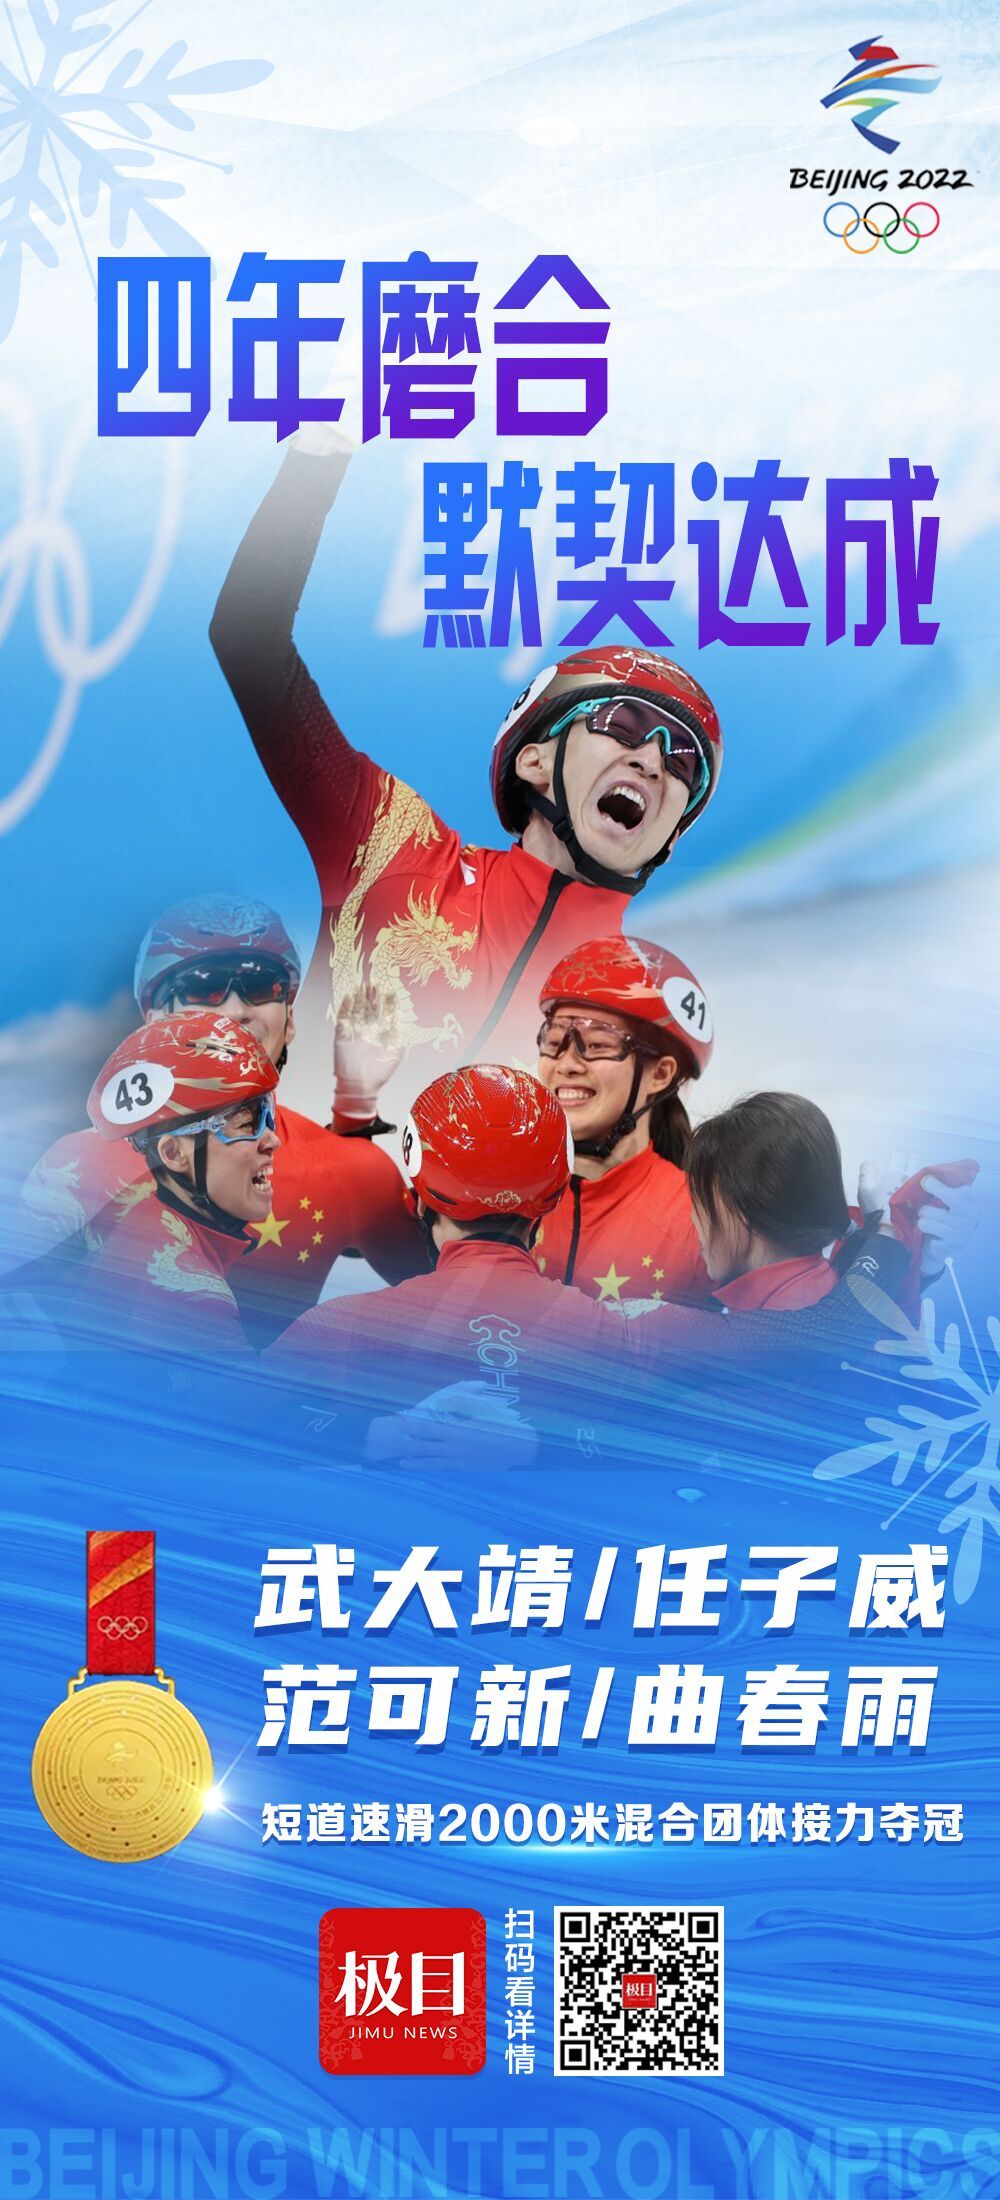 北京时间2月5日晚,在2022北京冬奥会短道速滑2000米混合接力比赛中,以